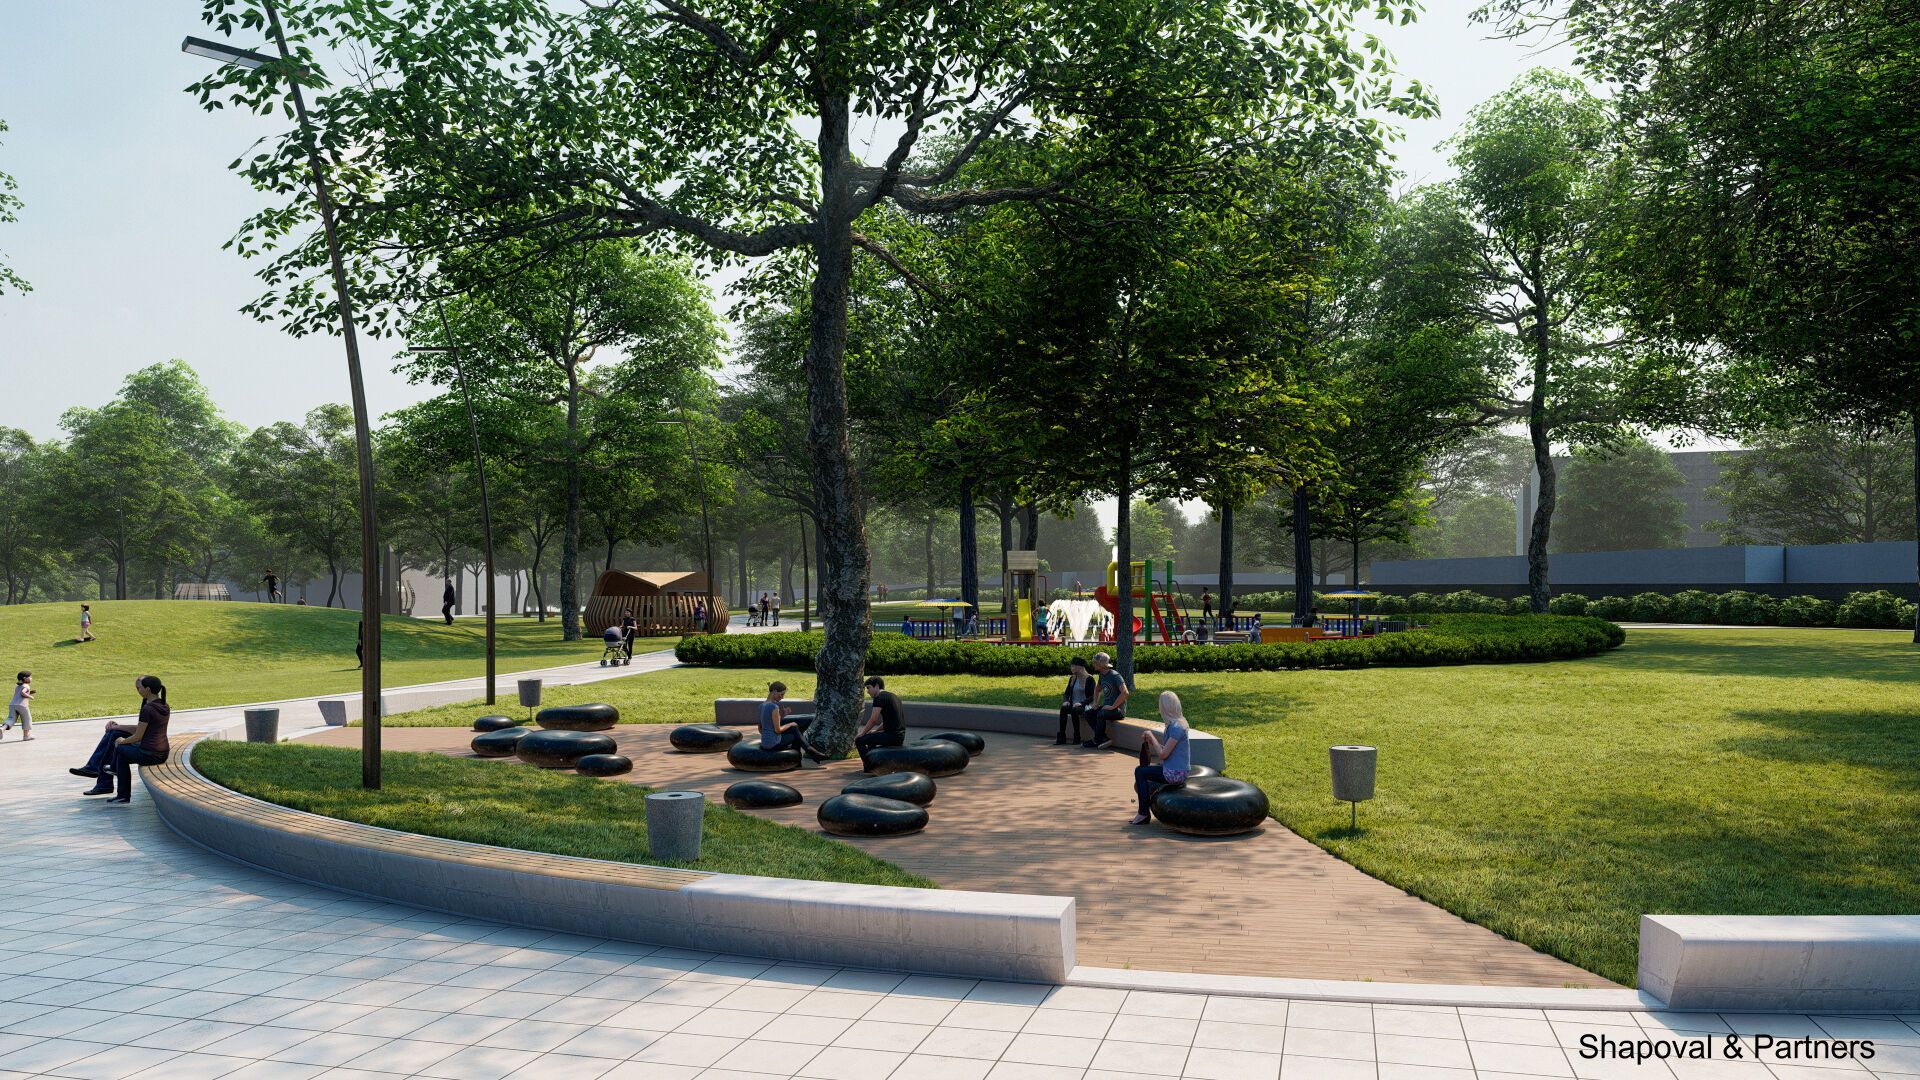 Концепция развития парка предусматривает его разделение на зоны для игр, отдыха